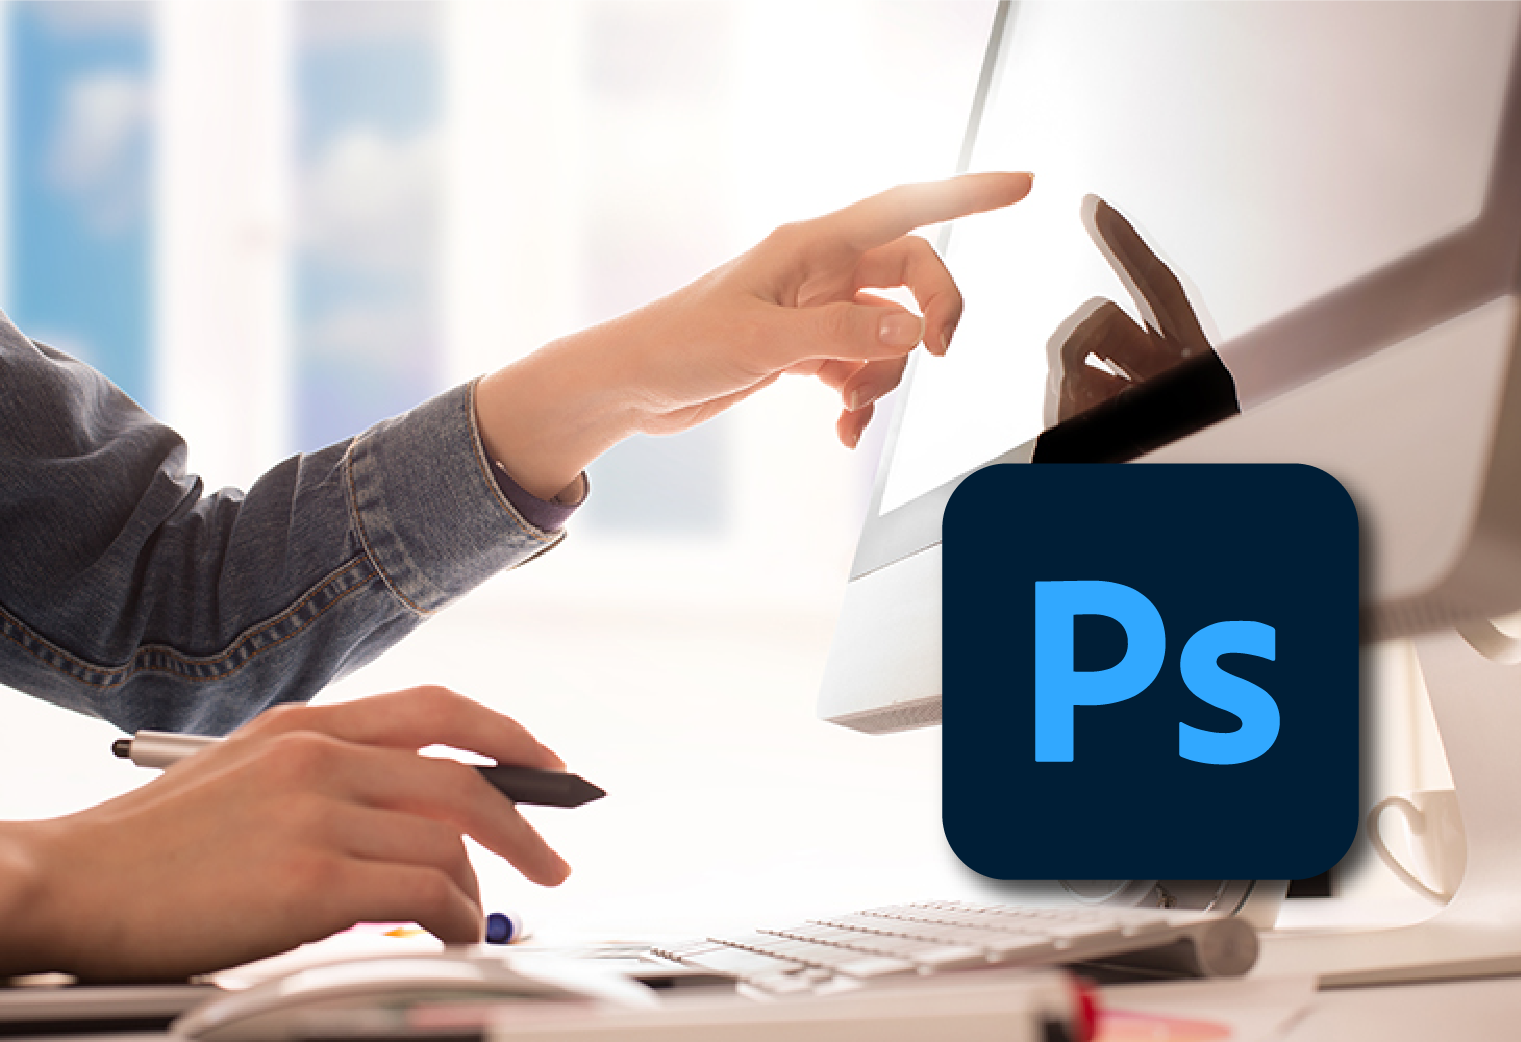 Adobe Photoshop – PS Training